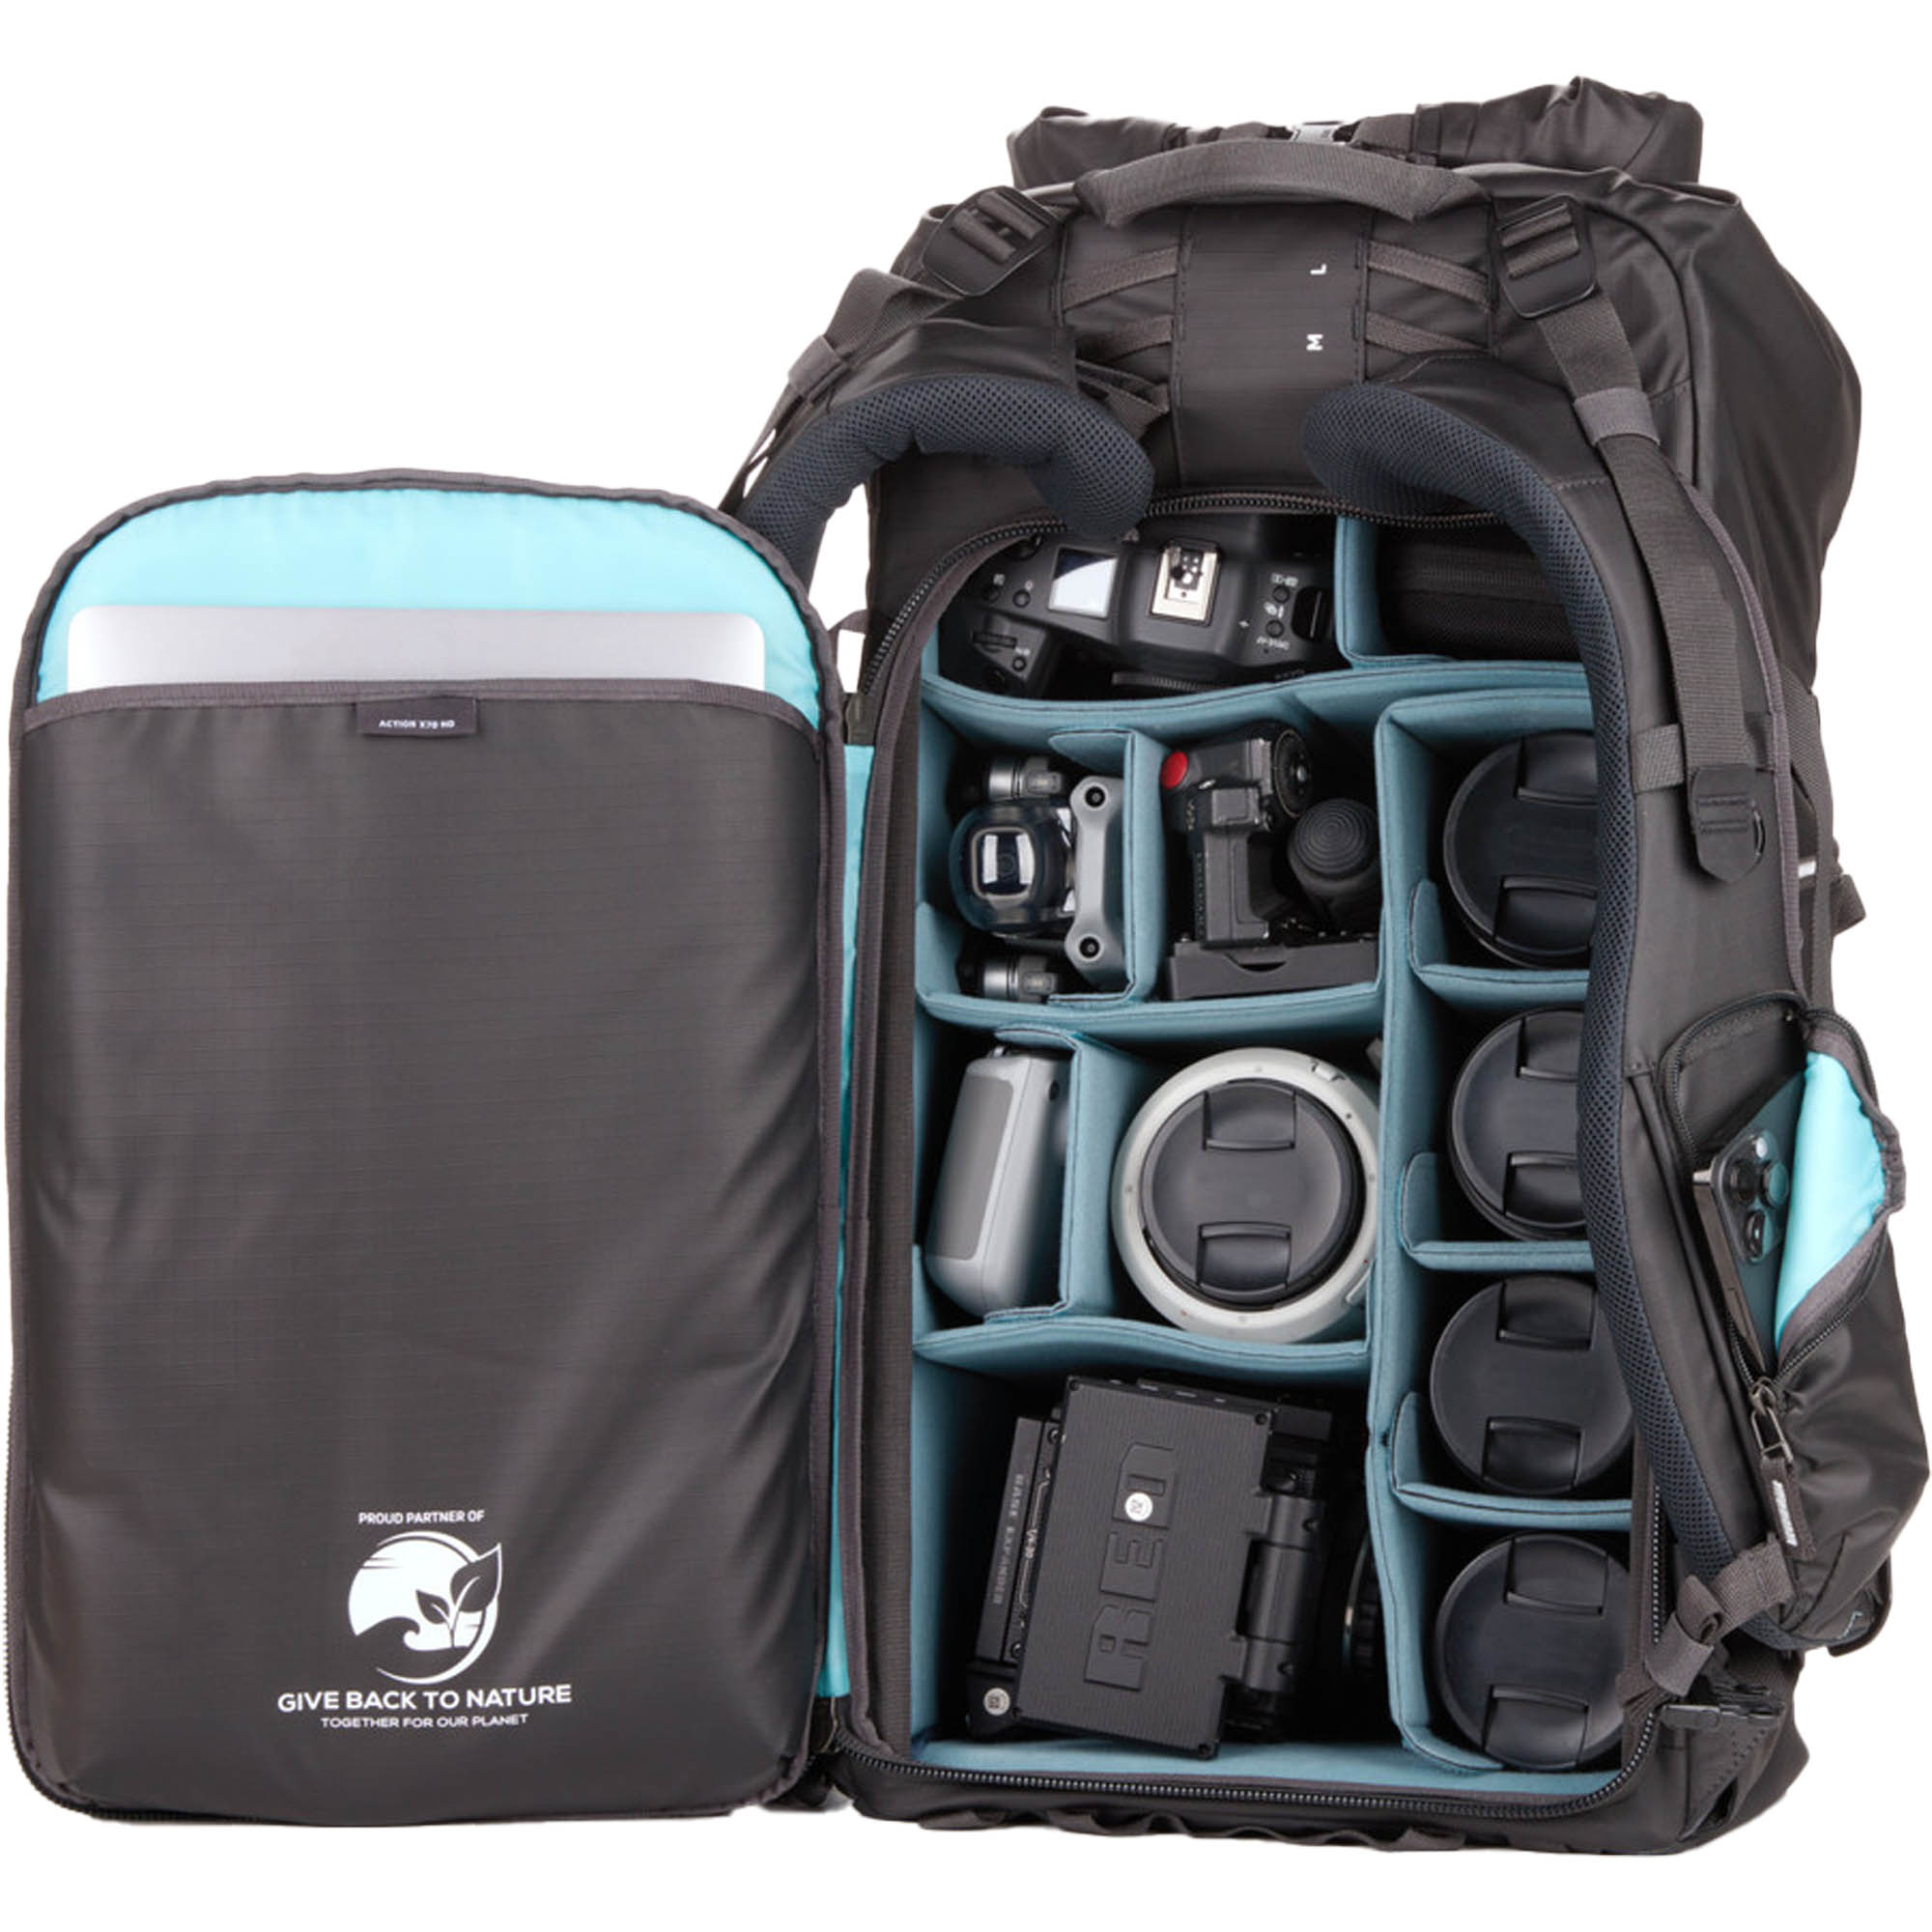 Shimoda Action X70 HD Camera Backpack